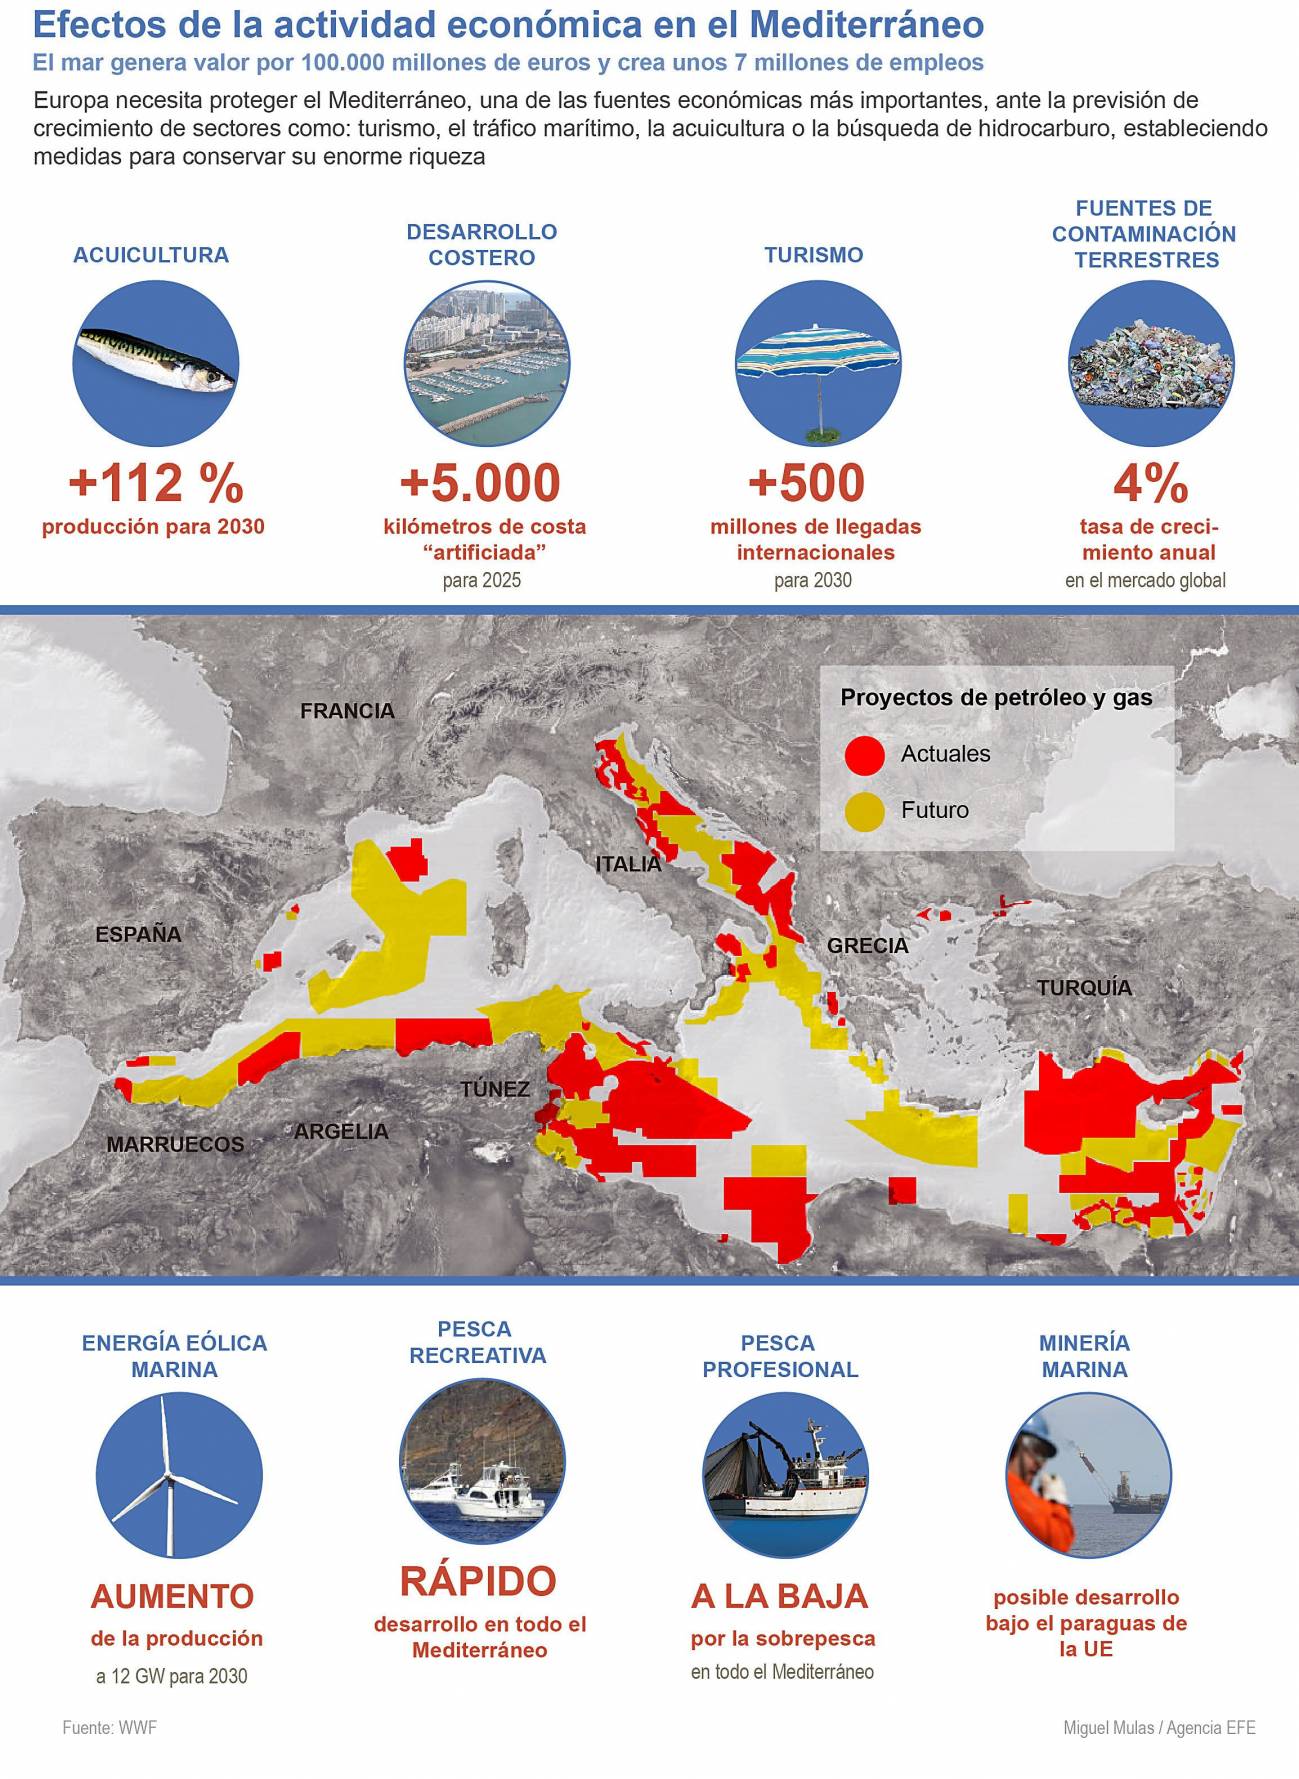 Efectos de la actividad económica en el Mediterráneo. /Efe